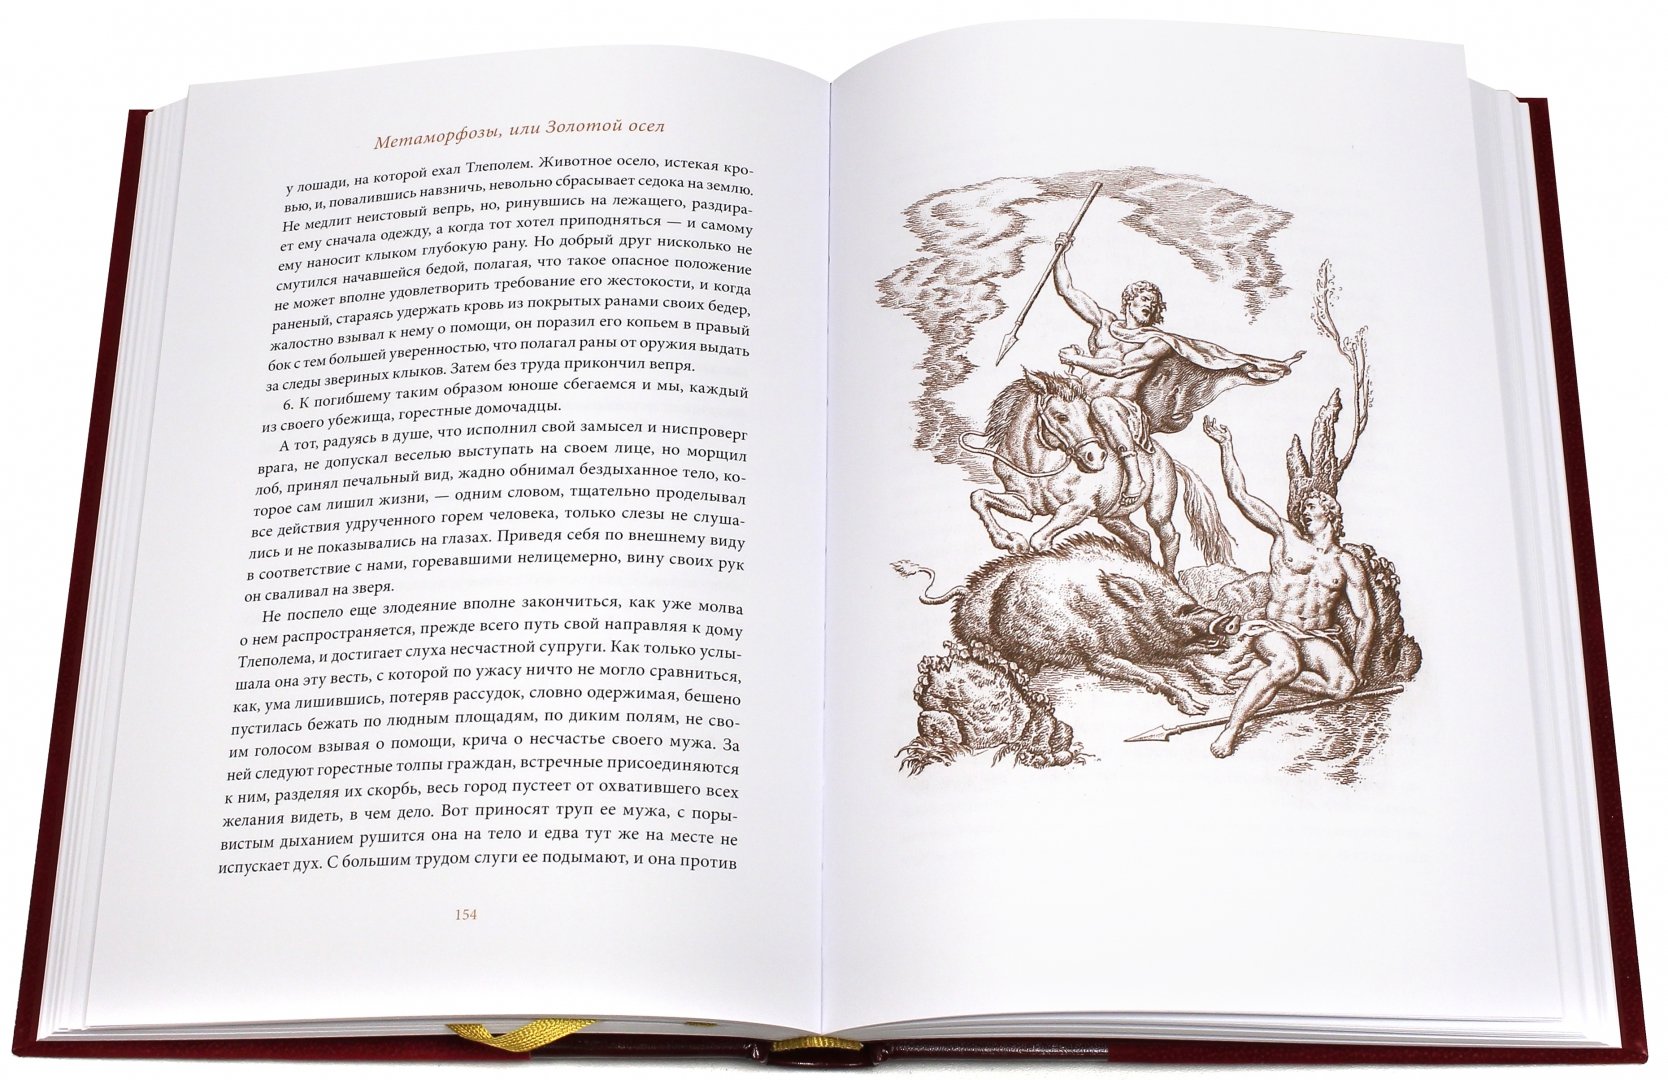 Иллюстрация 1 из 32 для Метаморфозы, или Золотой осел - Апулей | Лабиринт - книги. Источник: Лабиринт